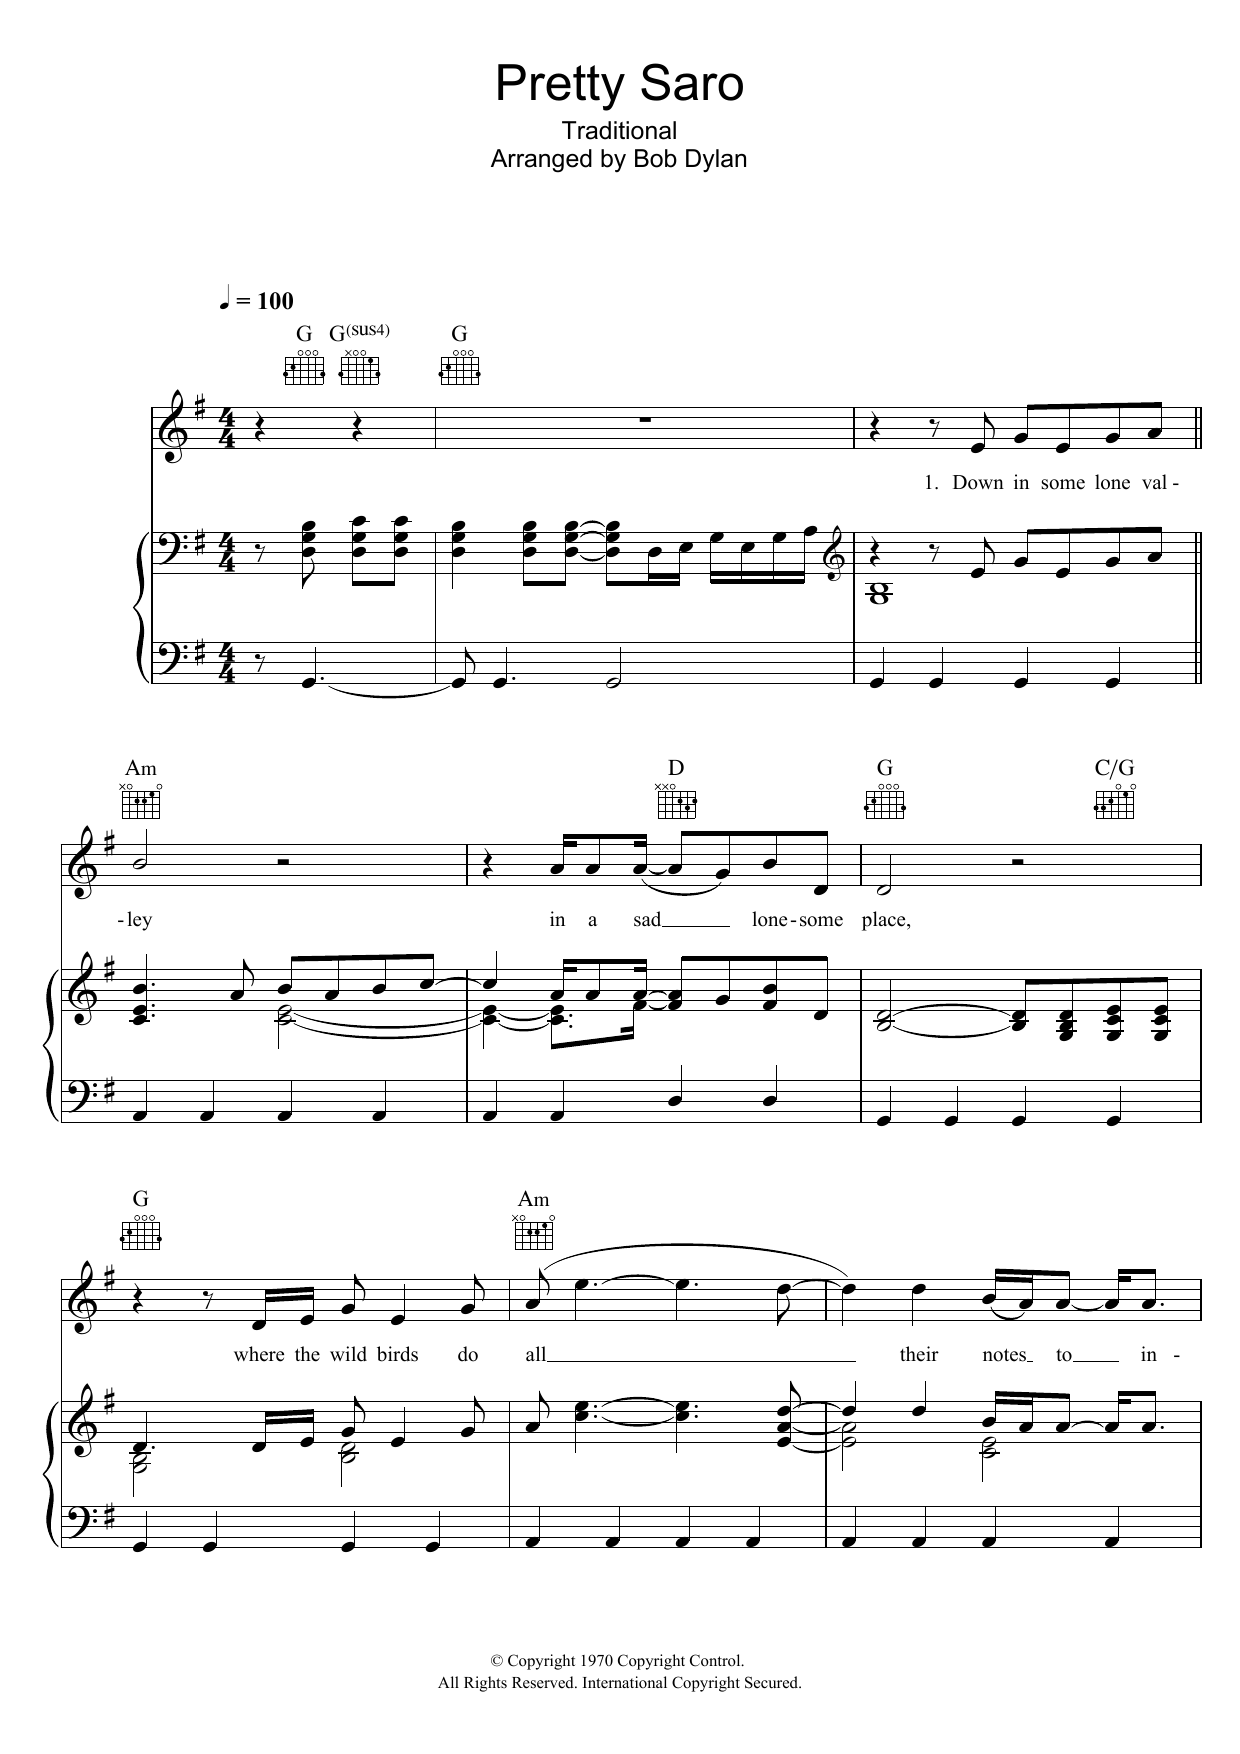 Bob Dylan Pretty Saro Sheet Music Notes & Chords for Ukulele Lyrics & Chords - Download or Print PDF